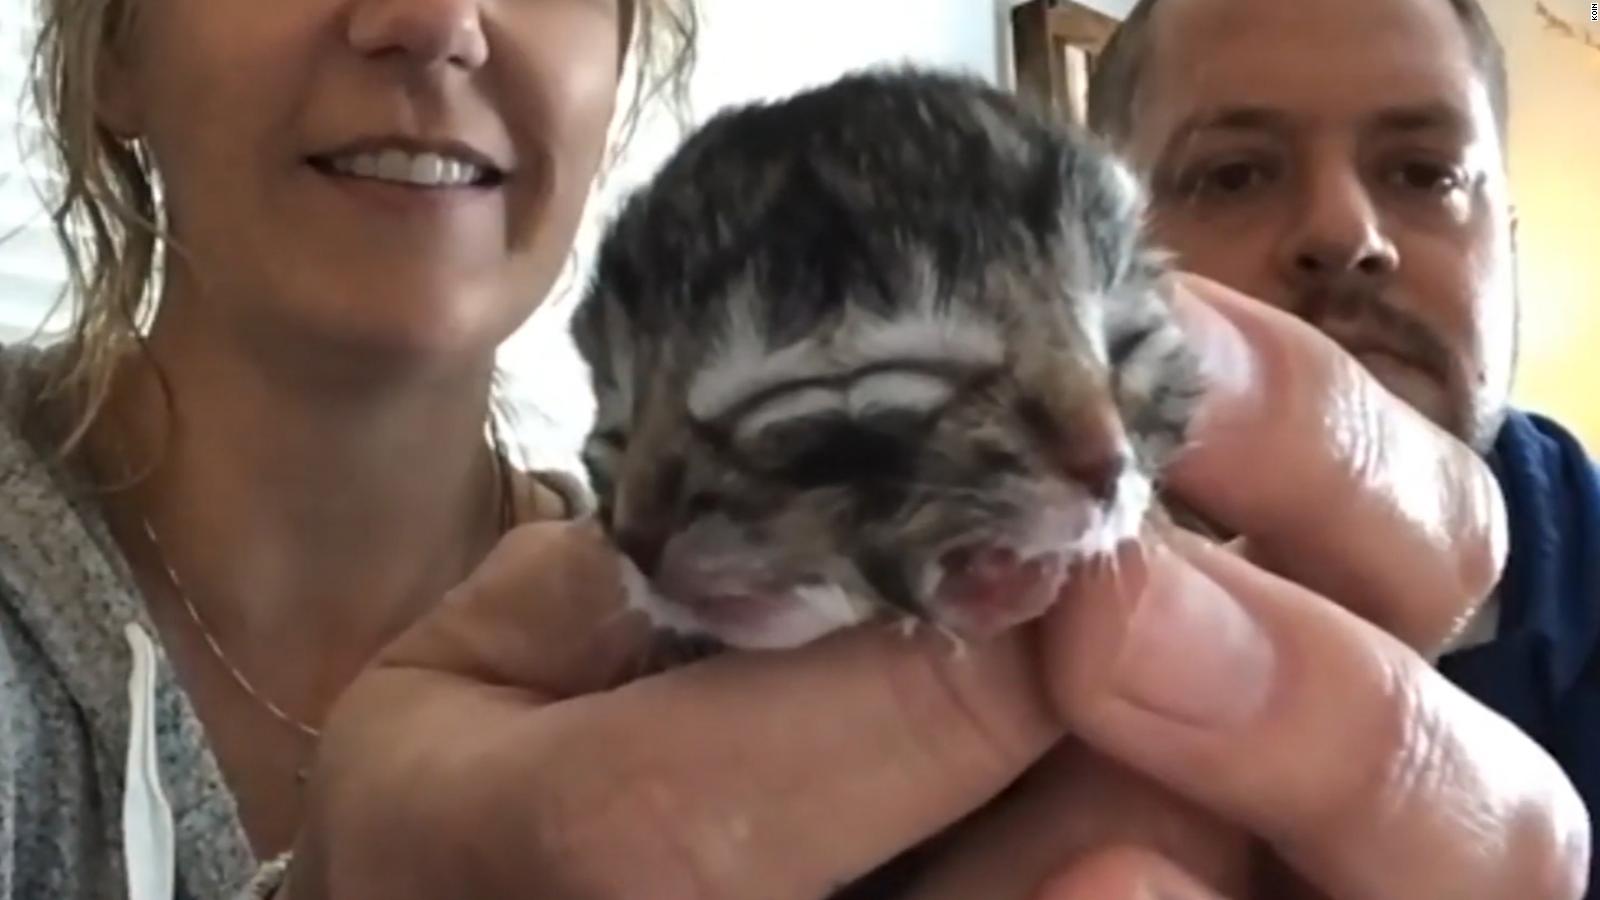 Nace gatito de dos caras y desborda el doble ternura en video | Video | CNN